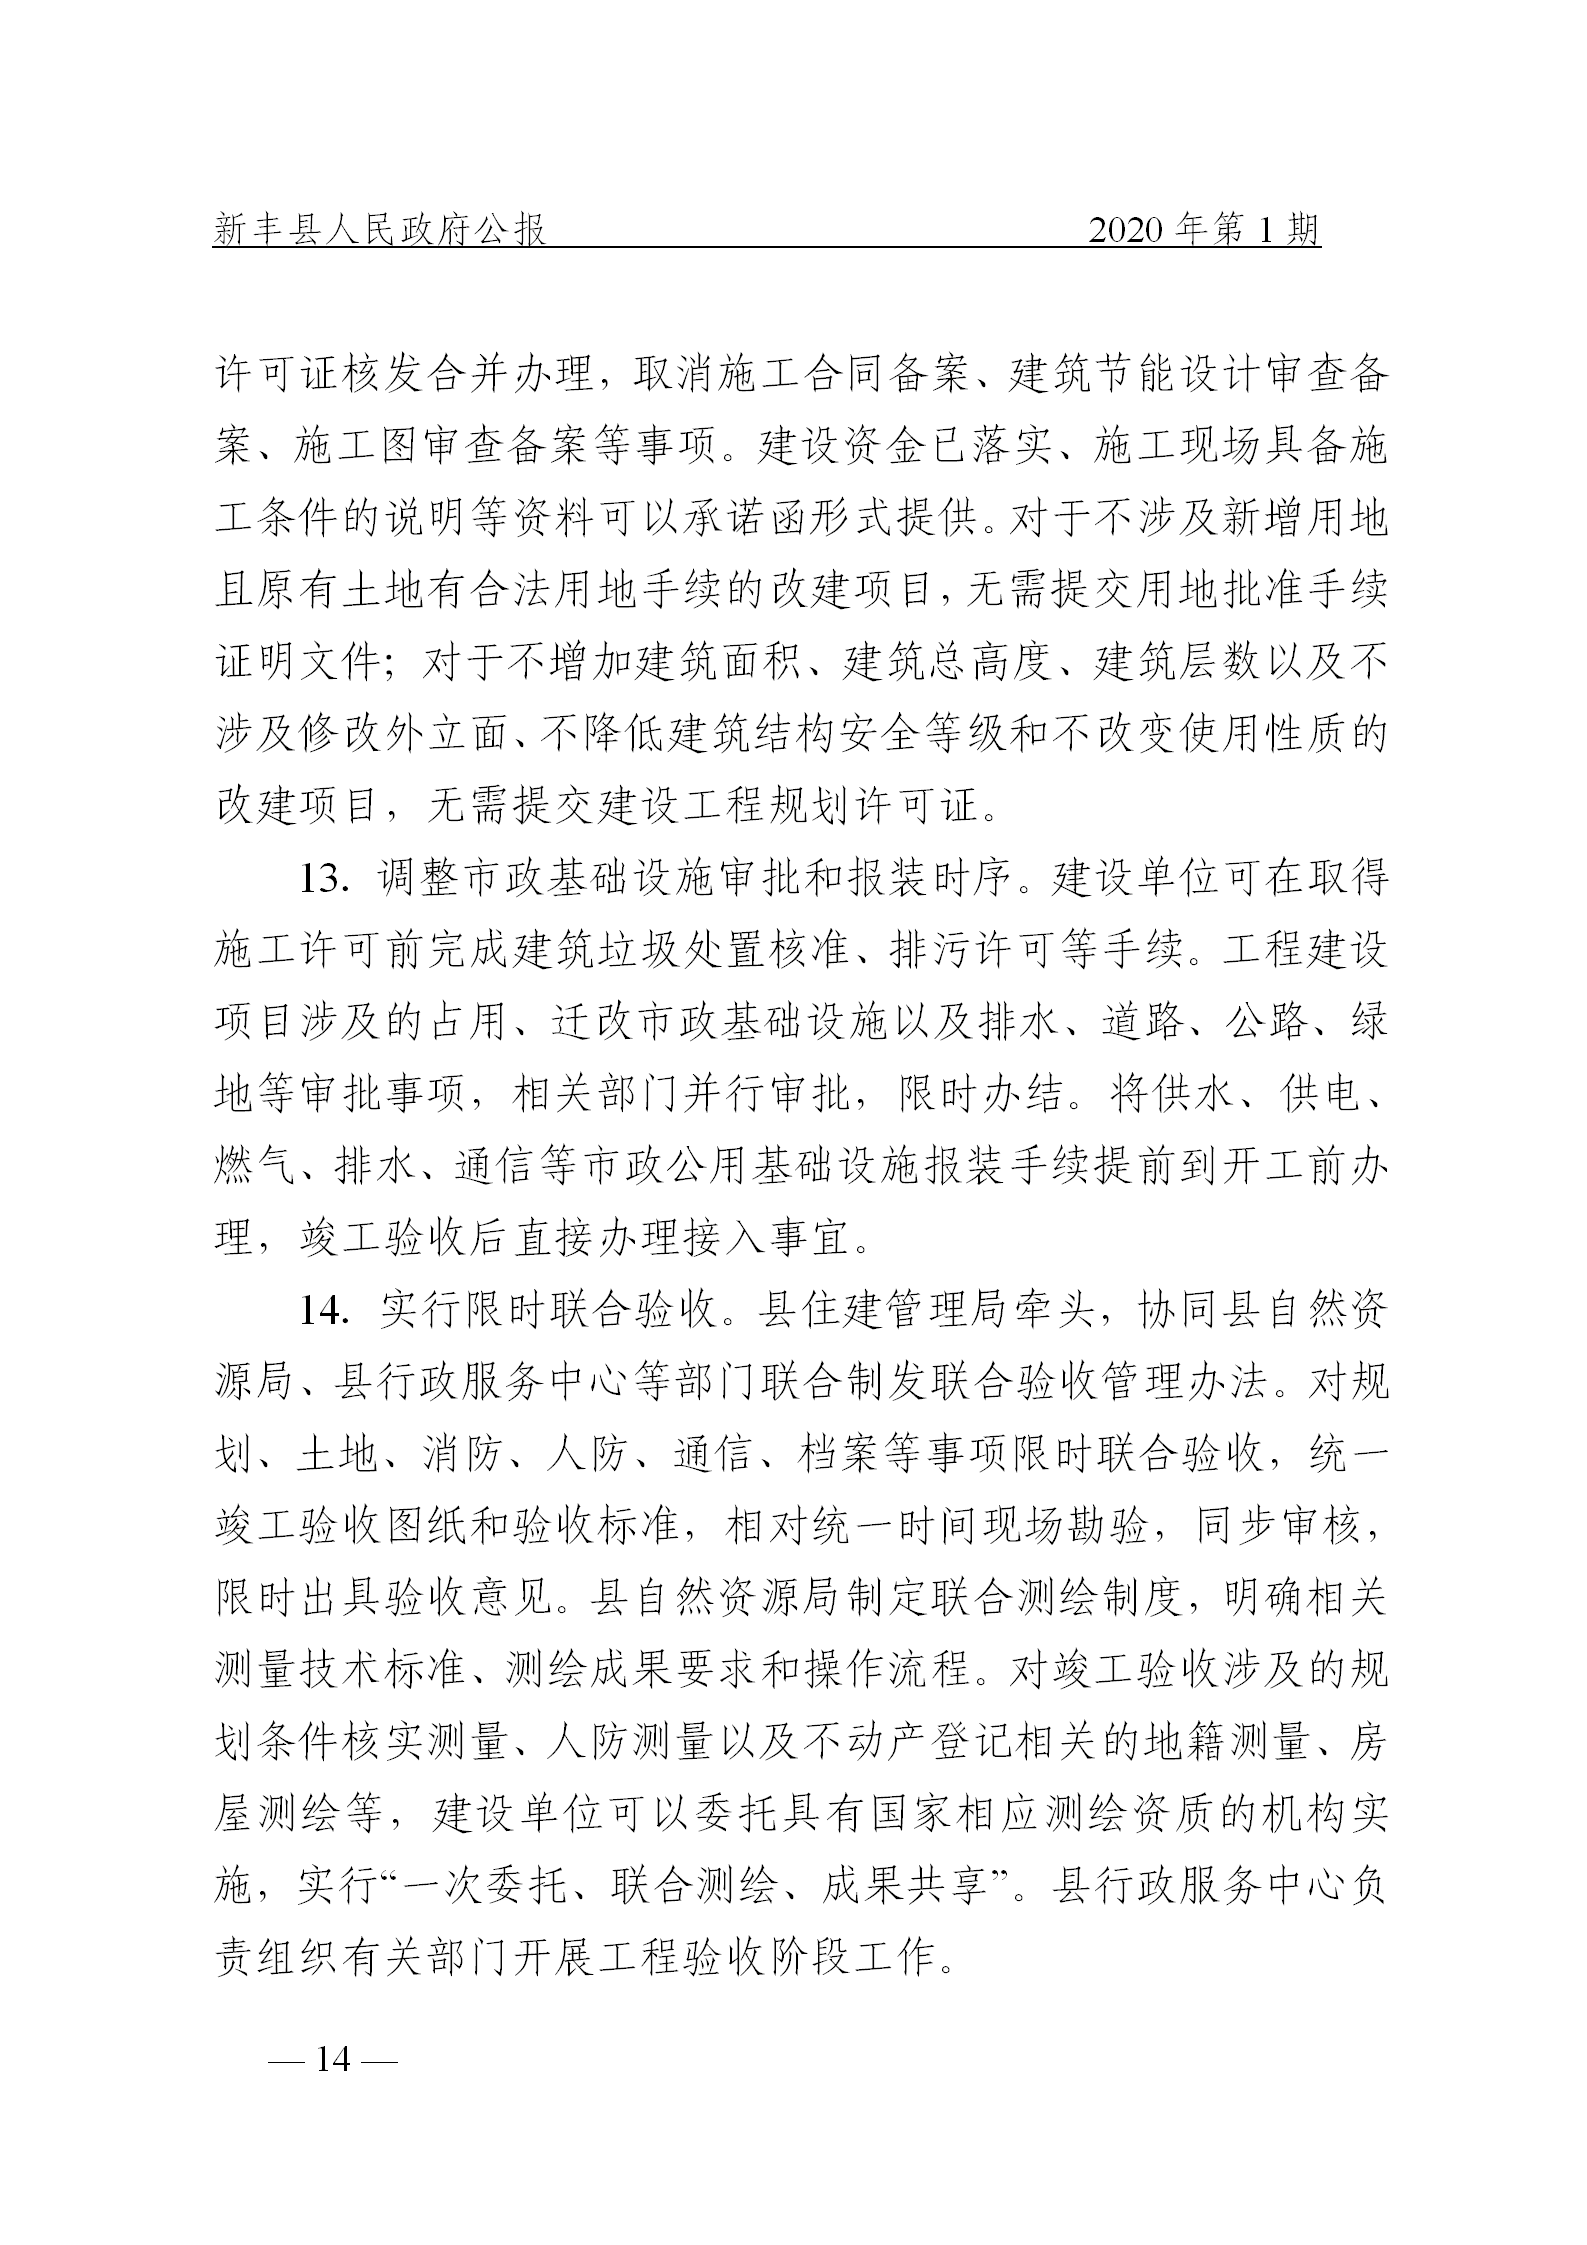 《新丰县人民政府公报》2020年第1期(1)_14.png